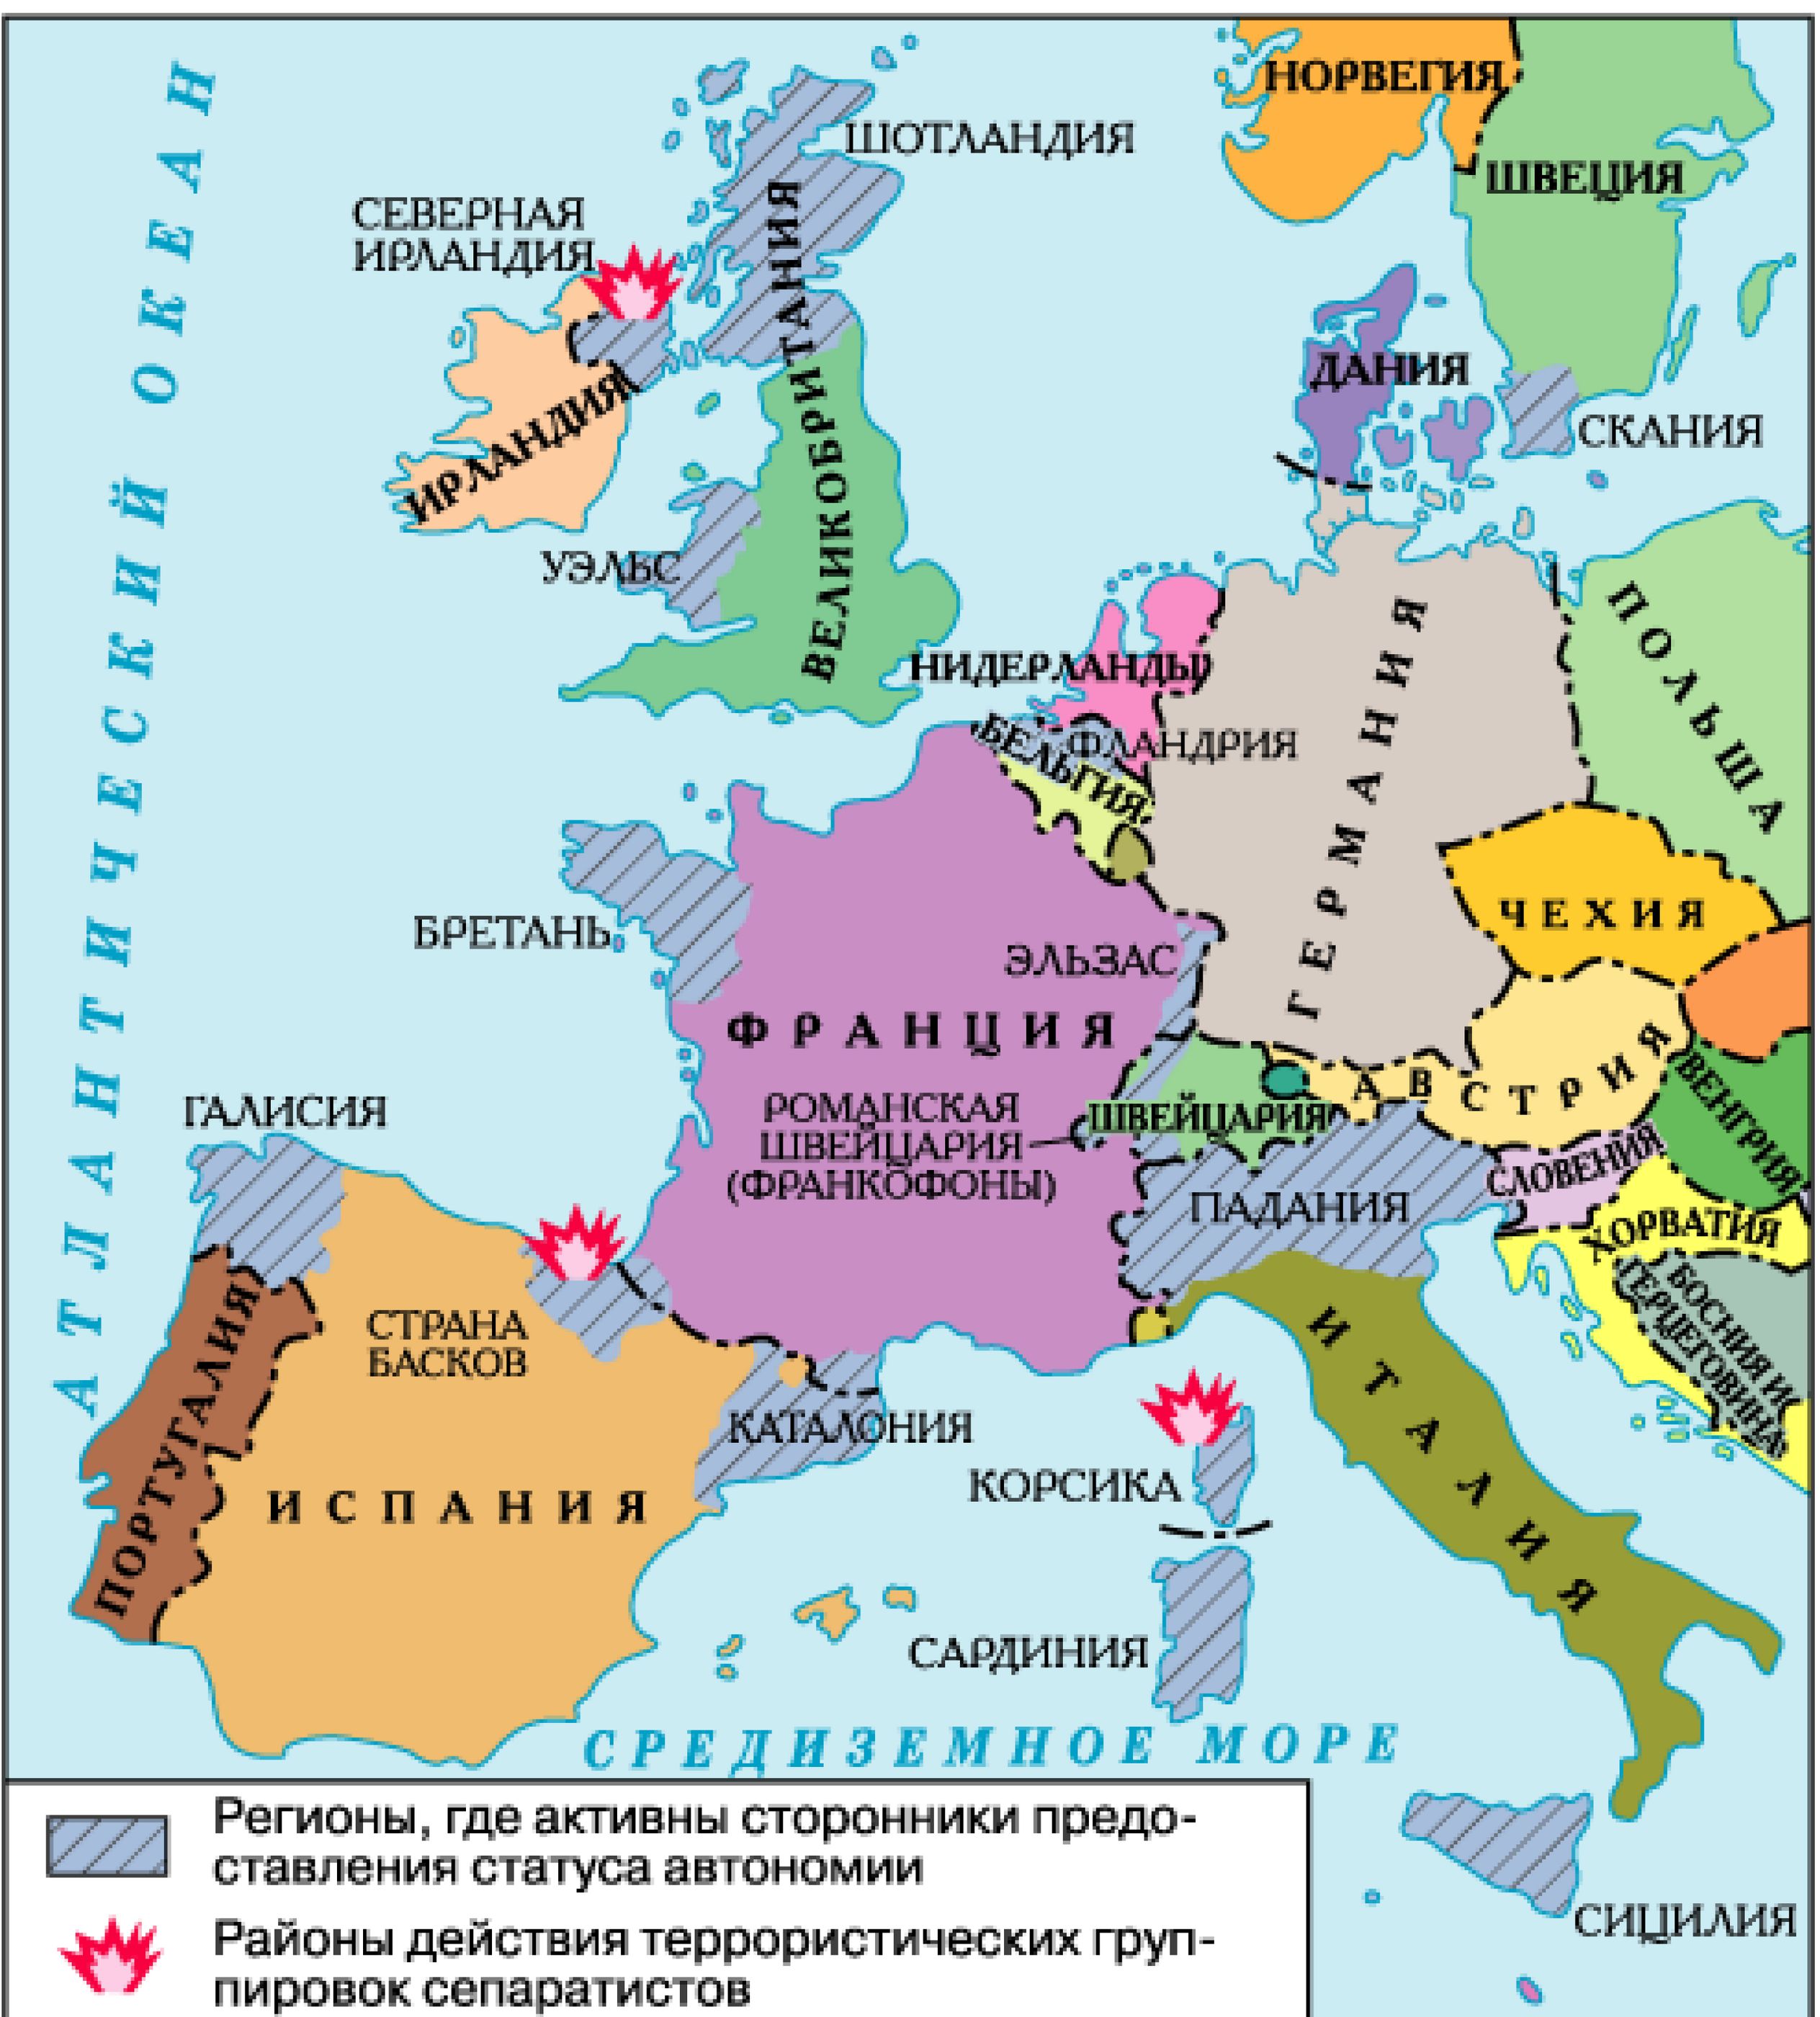 Какие страны европы вы знаете. Карта зарубежной Европы со странами и столицами. Карта зарубежной Европы государства и столицы. Политическая карта Европы со странами и столицами на русском. Политическая карта зарубежной Европы со странами и столицами.